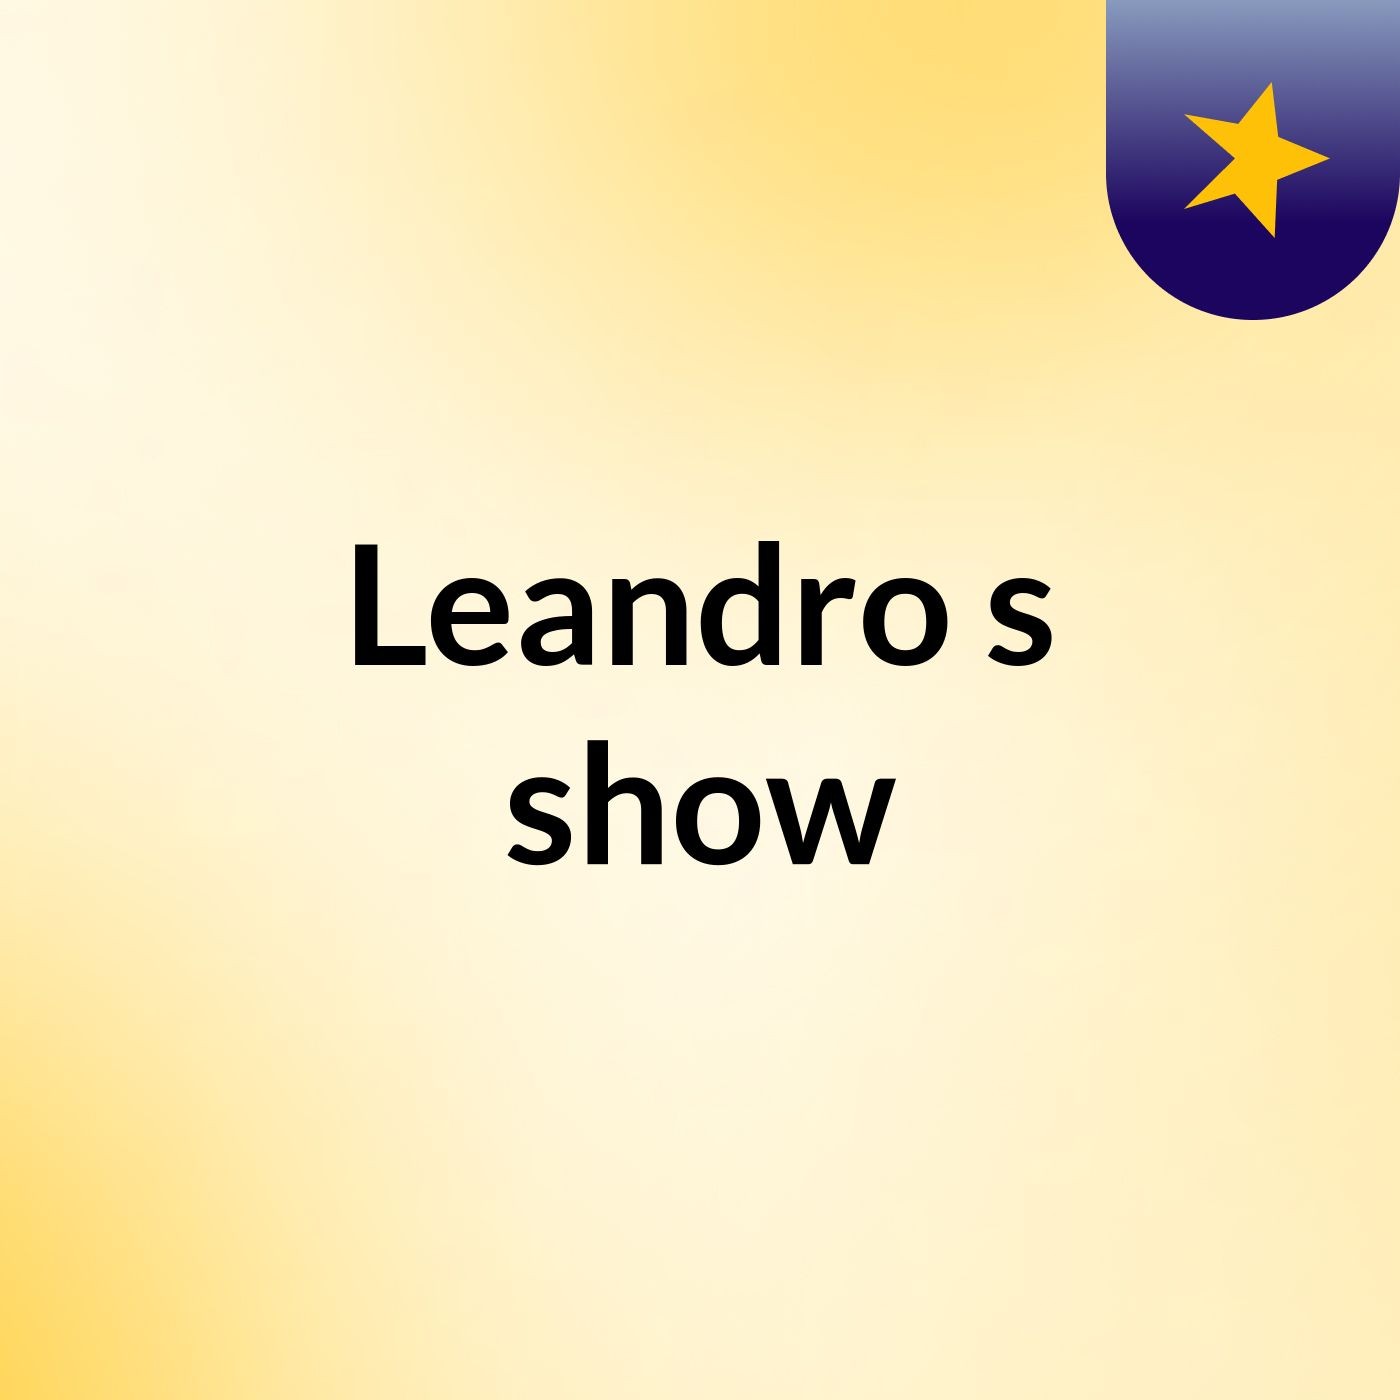 Leandro's show